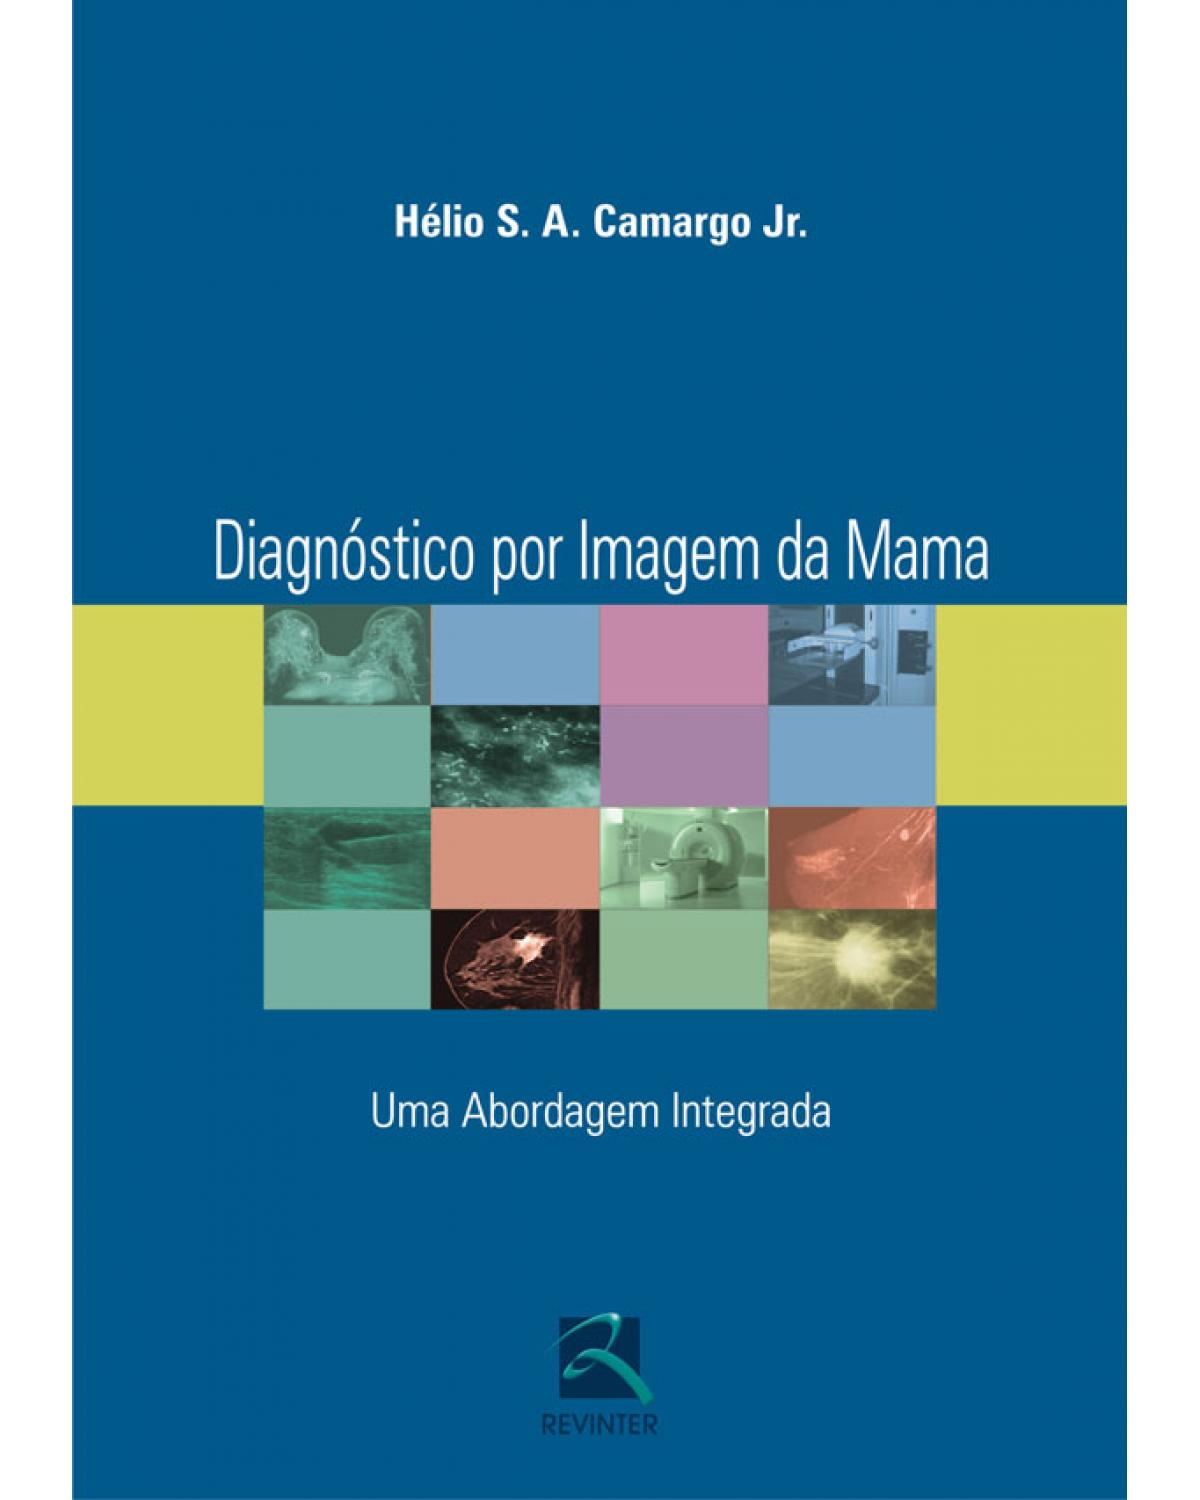 Diagnóstico por imagem da mama - uma abordagem integrada - 1ª Edição | 2008